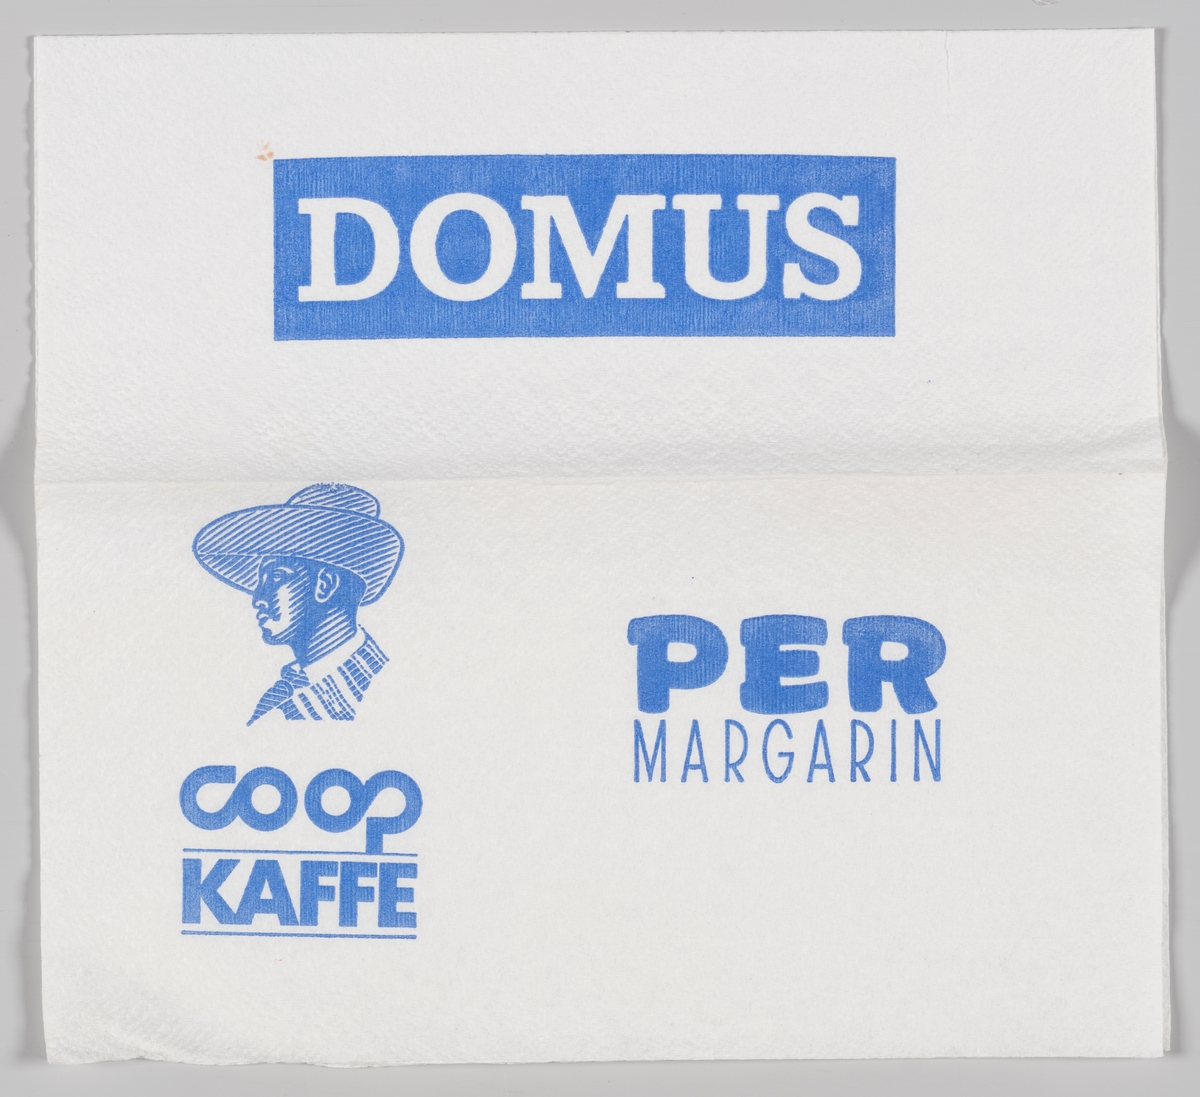 Tegning av en mann med hatt og reklame for Domus, Coop kaffe og Per magarin.

Den første DOMUS stormarked åpnet i 1968 og i 1997 ble kjedekonseptet omprofilert til Coop Obs!